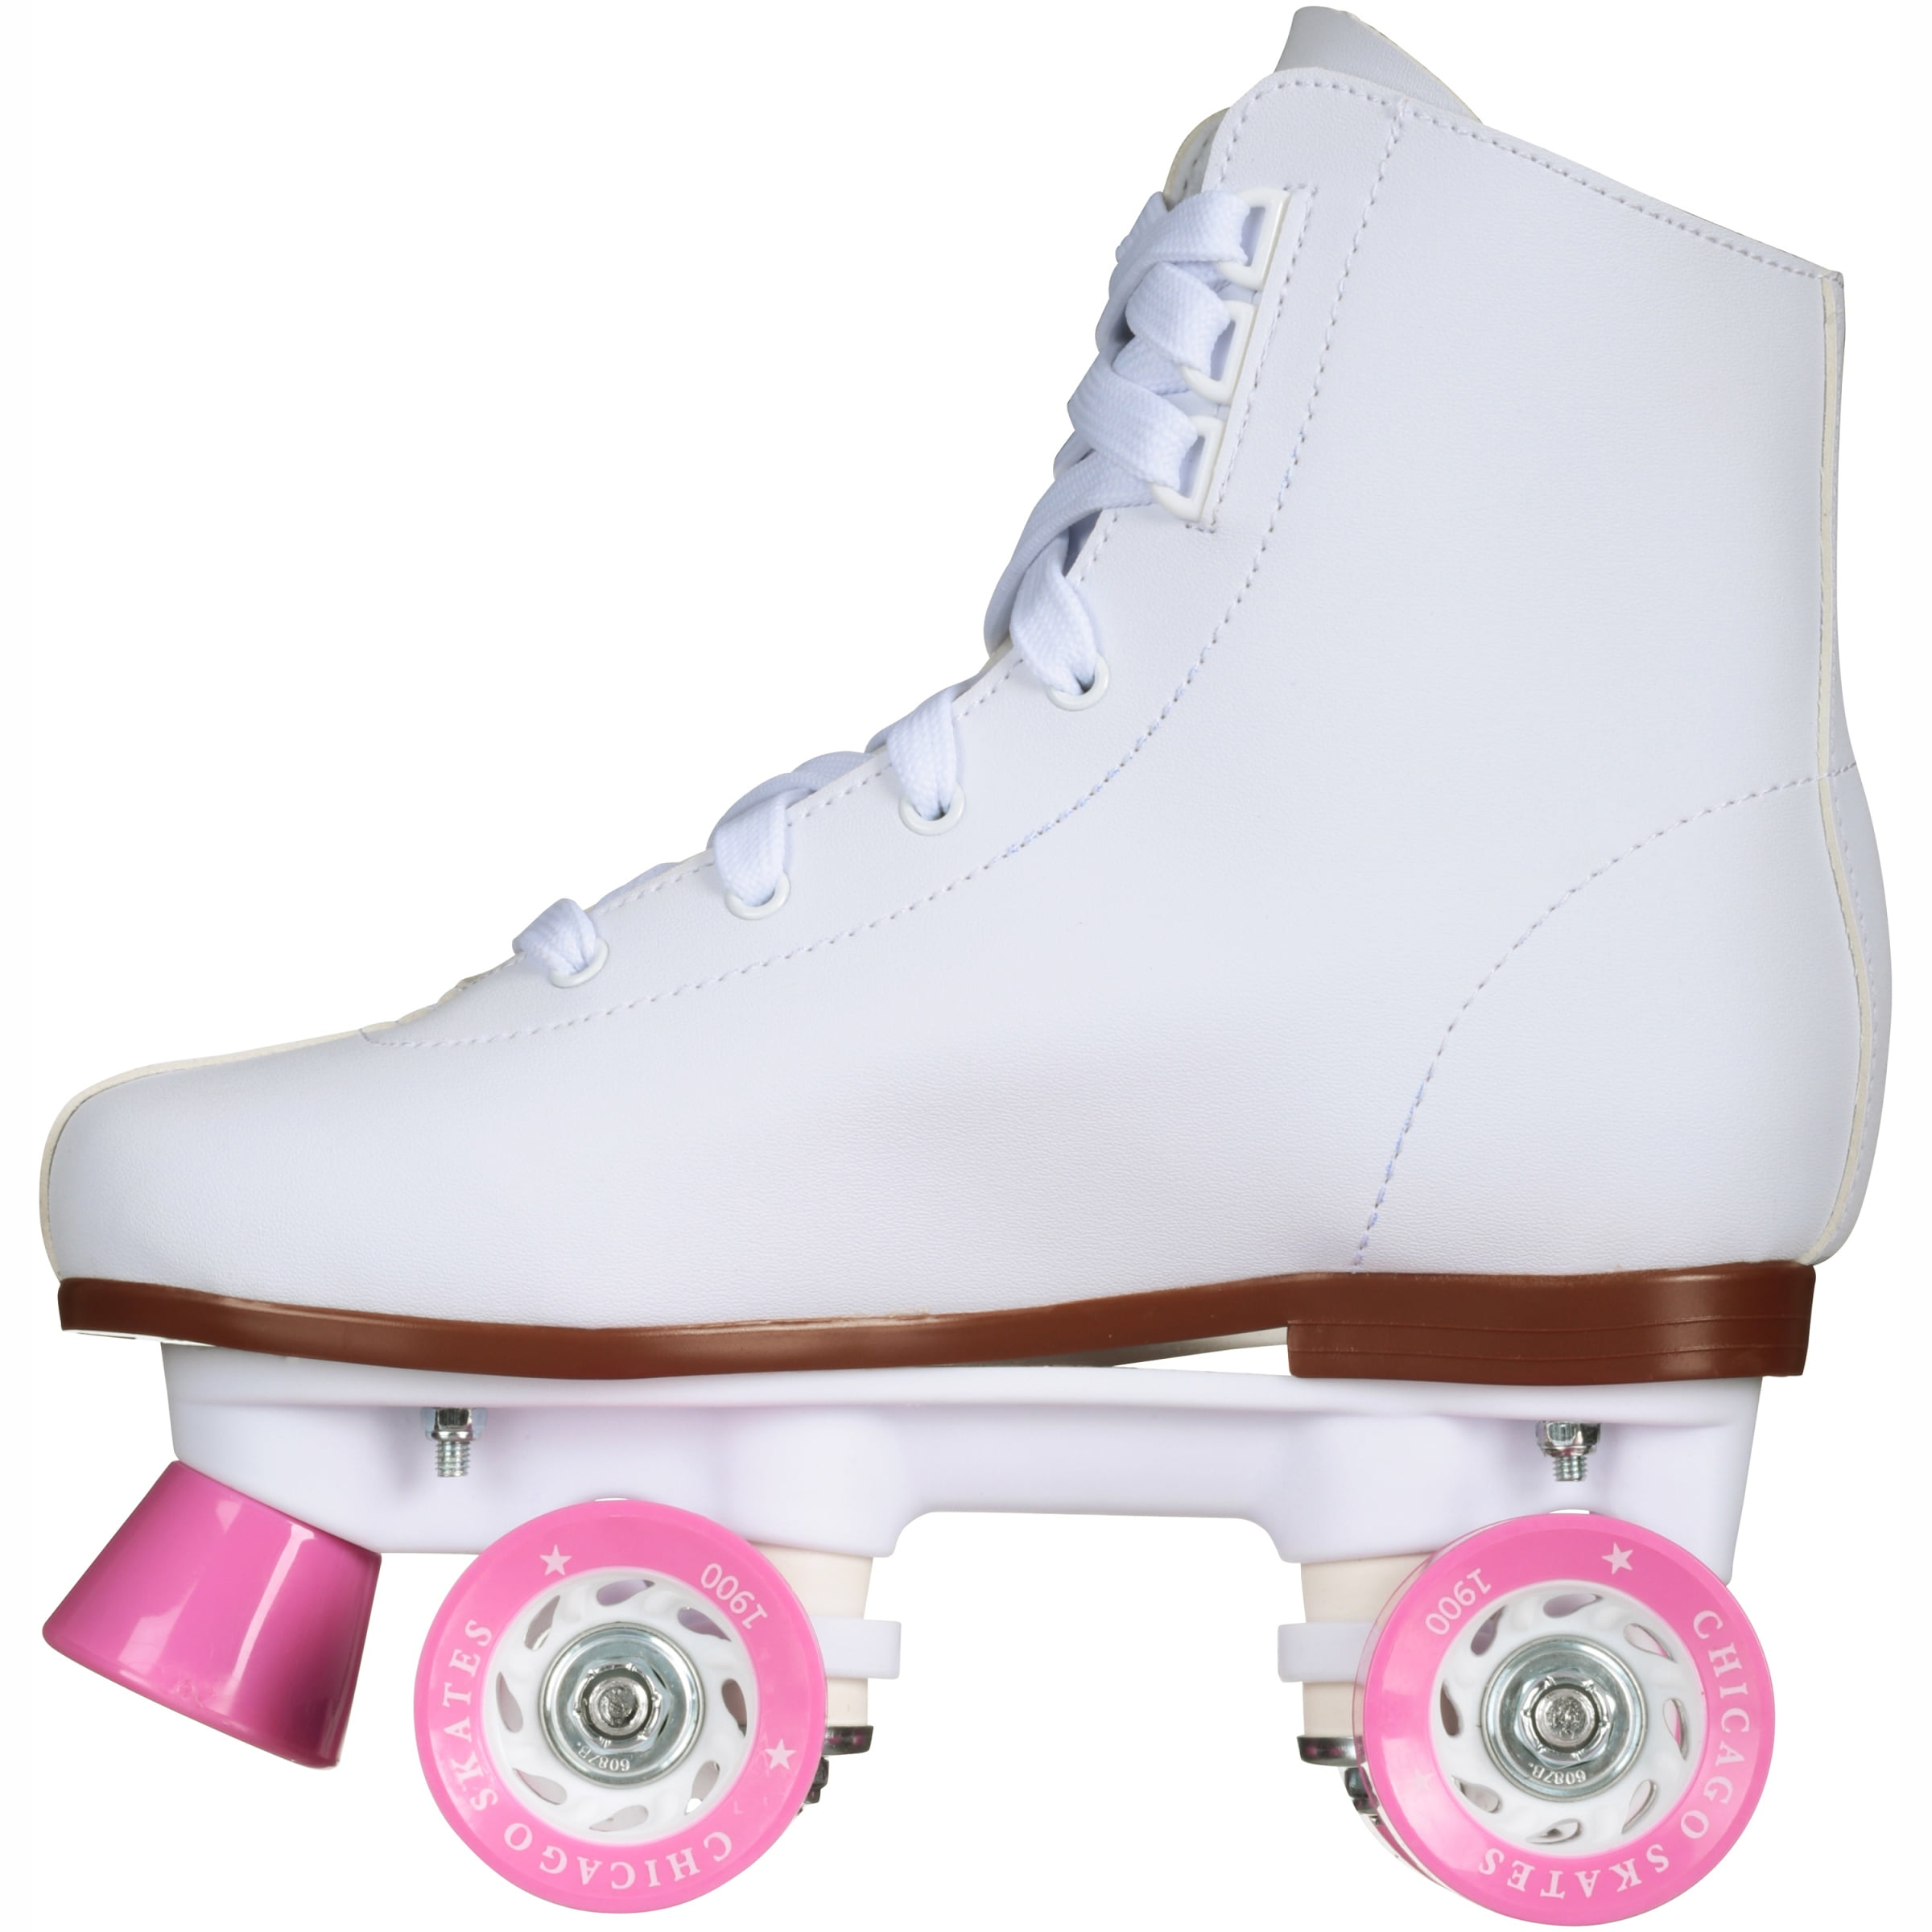 Size Y... Chicago Skates Girl’s Classic Roller Skates White Rink Quad Skates 